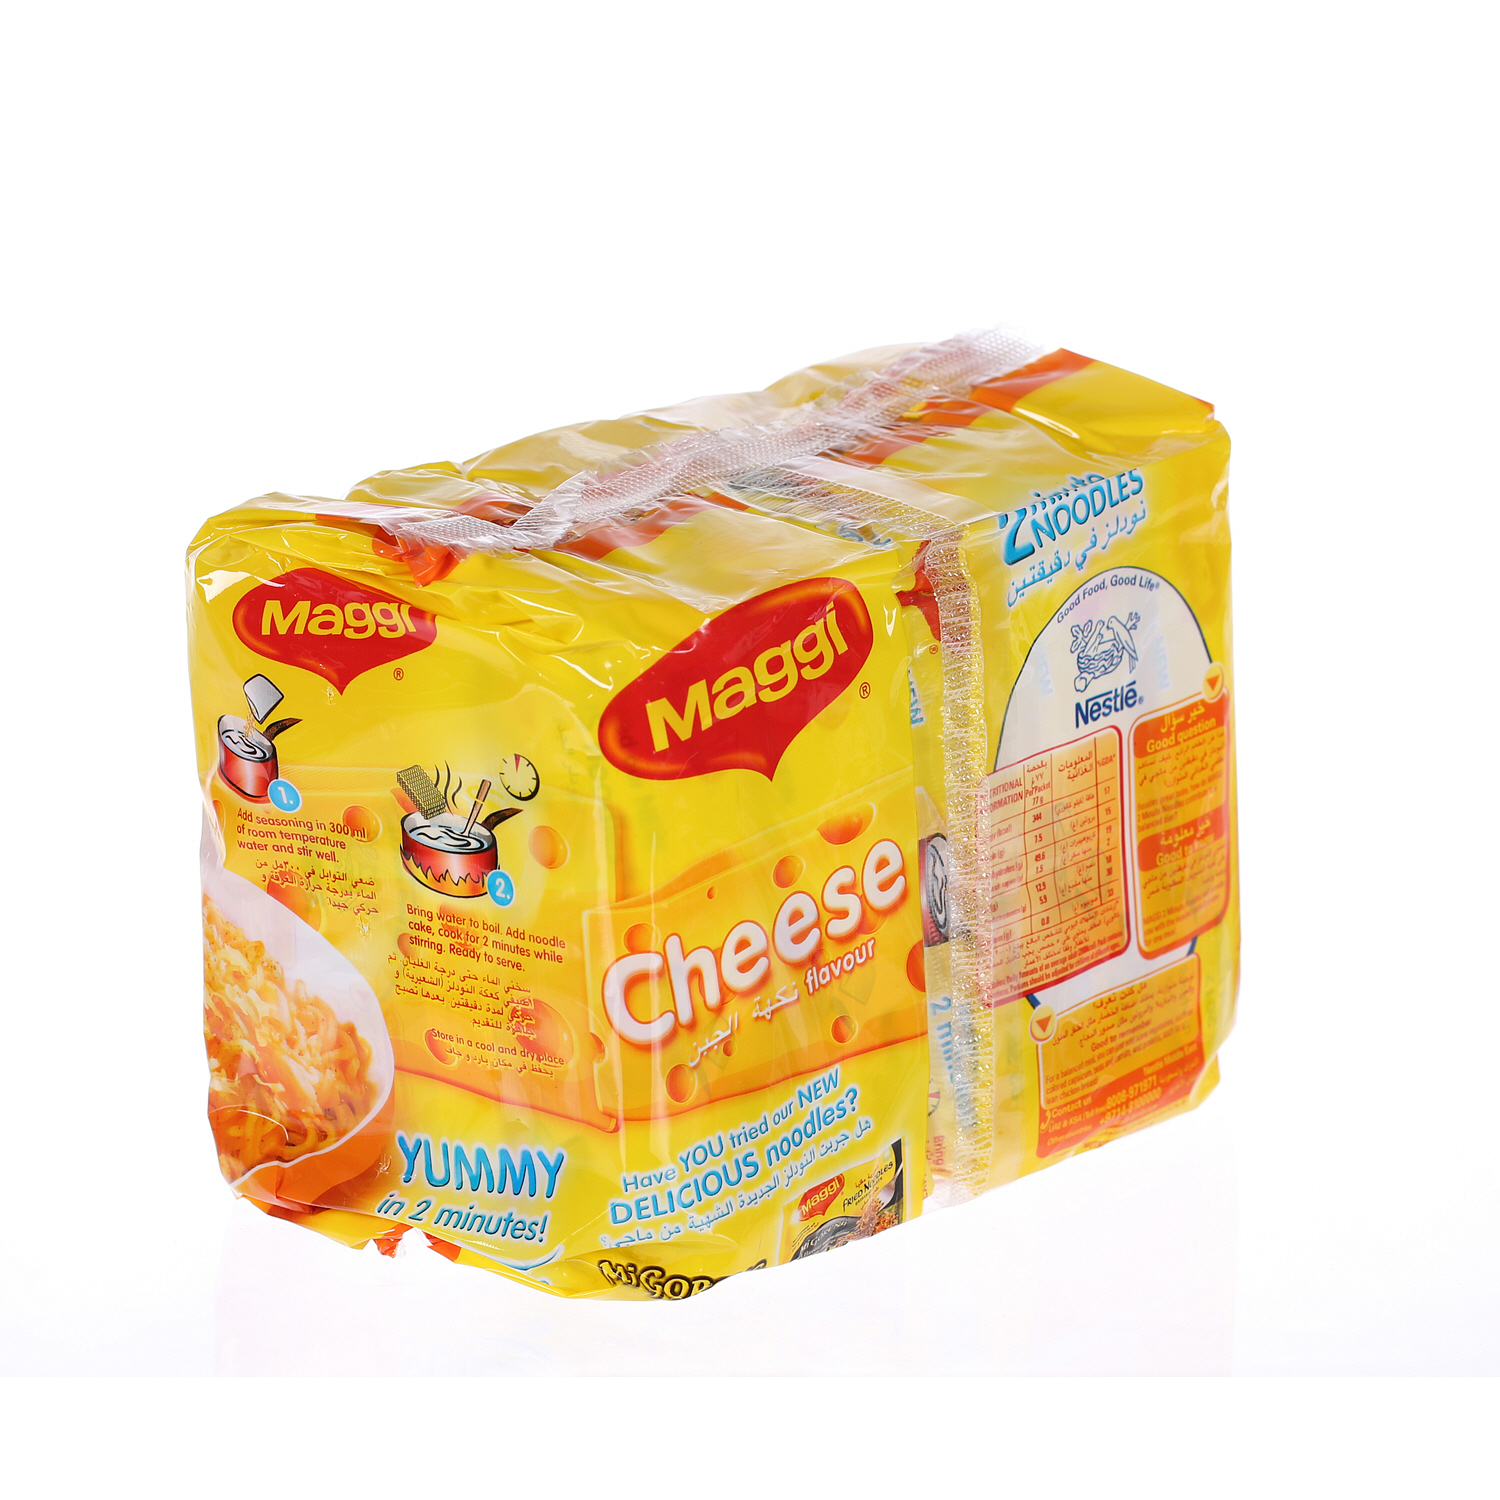 ماجي نودلز بالجبنة 77 جرام × 5 حبات